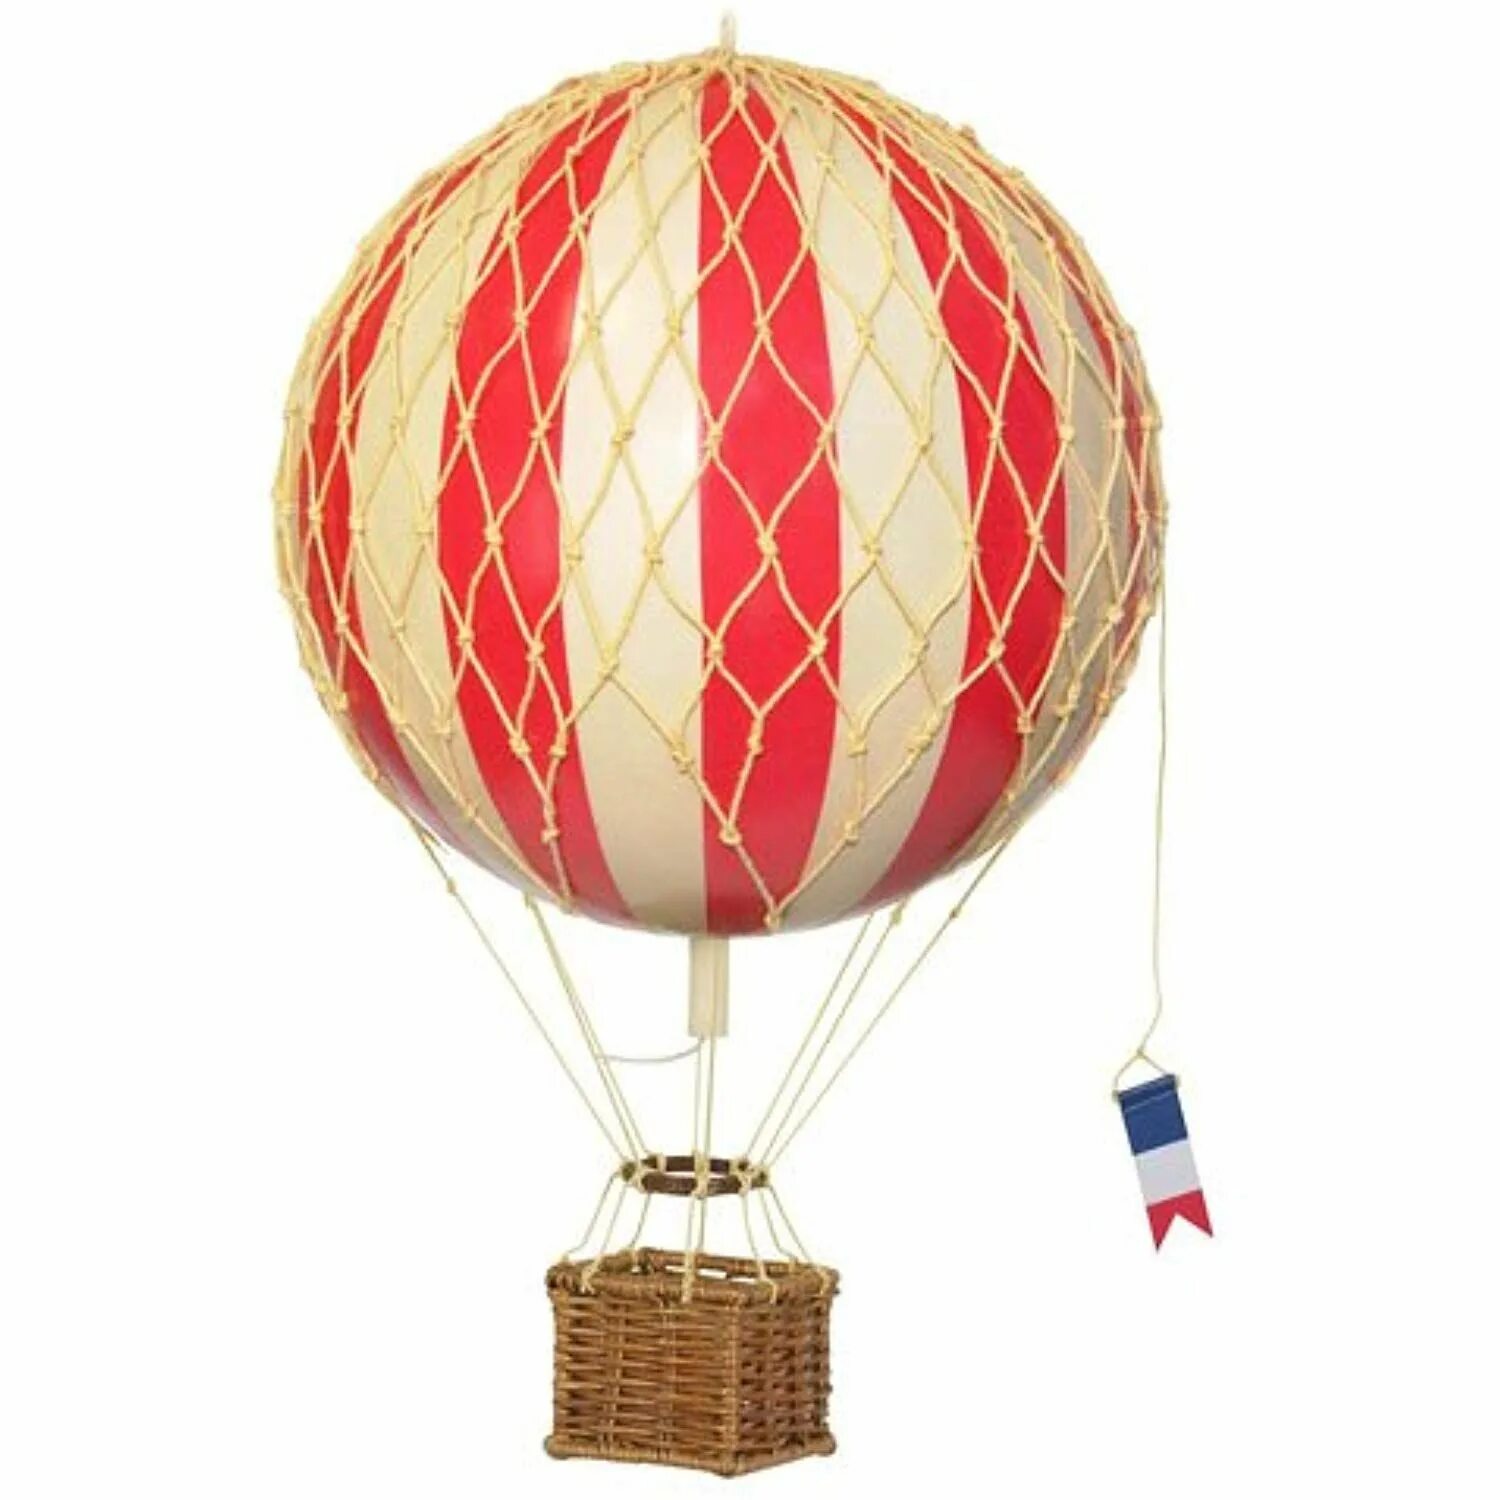 Модели воздушных шаров. Воздушный шар с корзиной. Декоративный воздушный шар. Корзинка для воздушного шара. Летающий шар с корзиной.